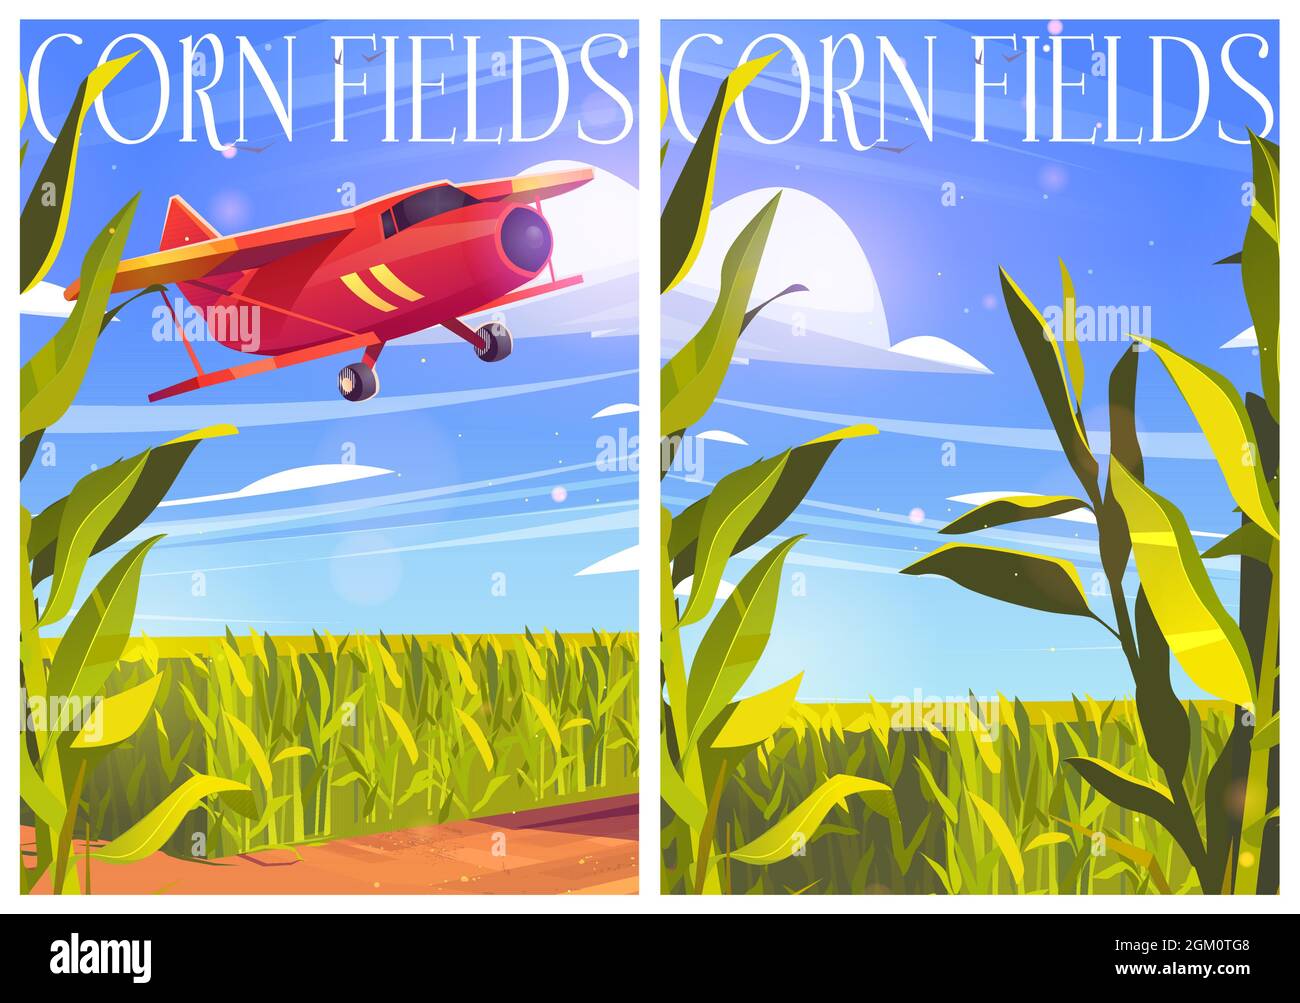 Affiches de champs de maïs avec avion rouge et plantes céréalières vertes. Banderoles vectorielles avec champ de maïs agricole et biplan dans le ciel. Terres agricoles avec plantation de maïs et avions volants Illustration de Vecteur